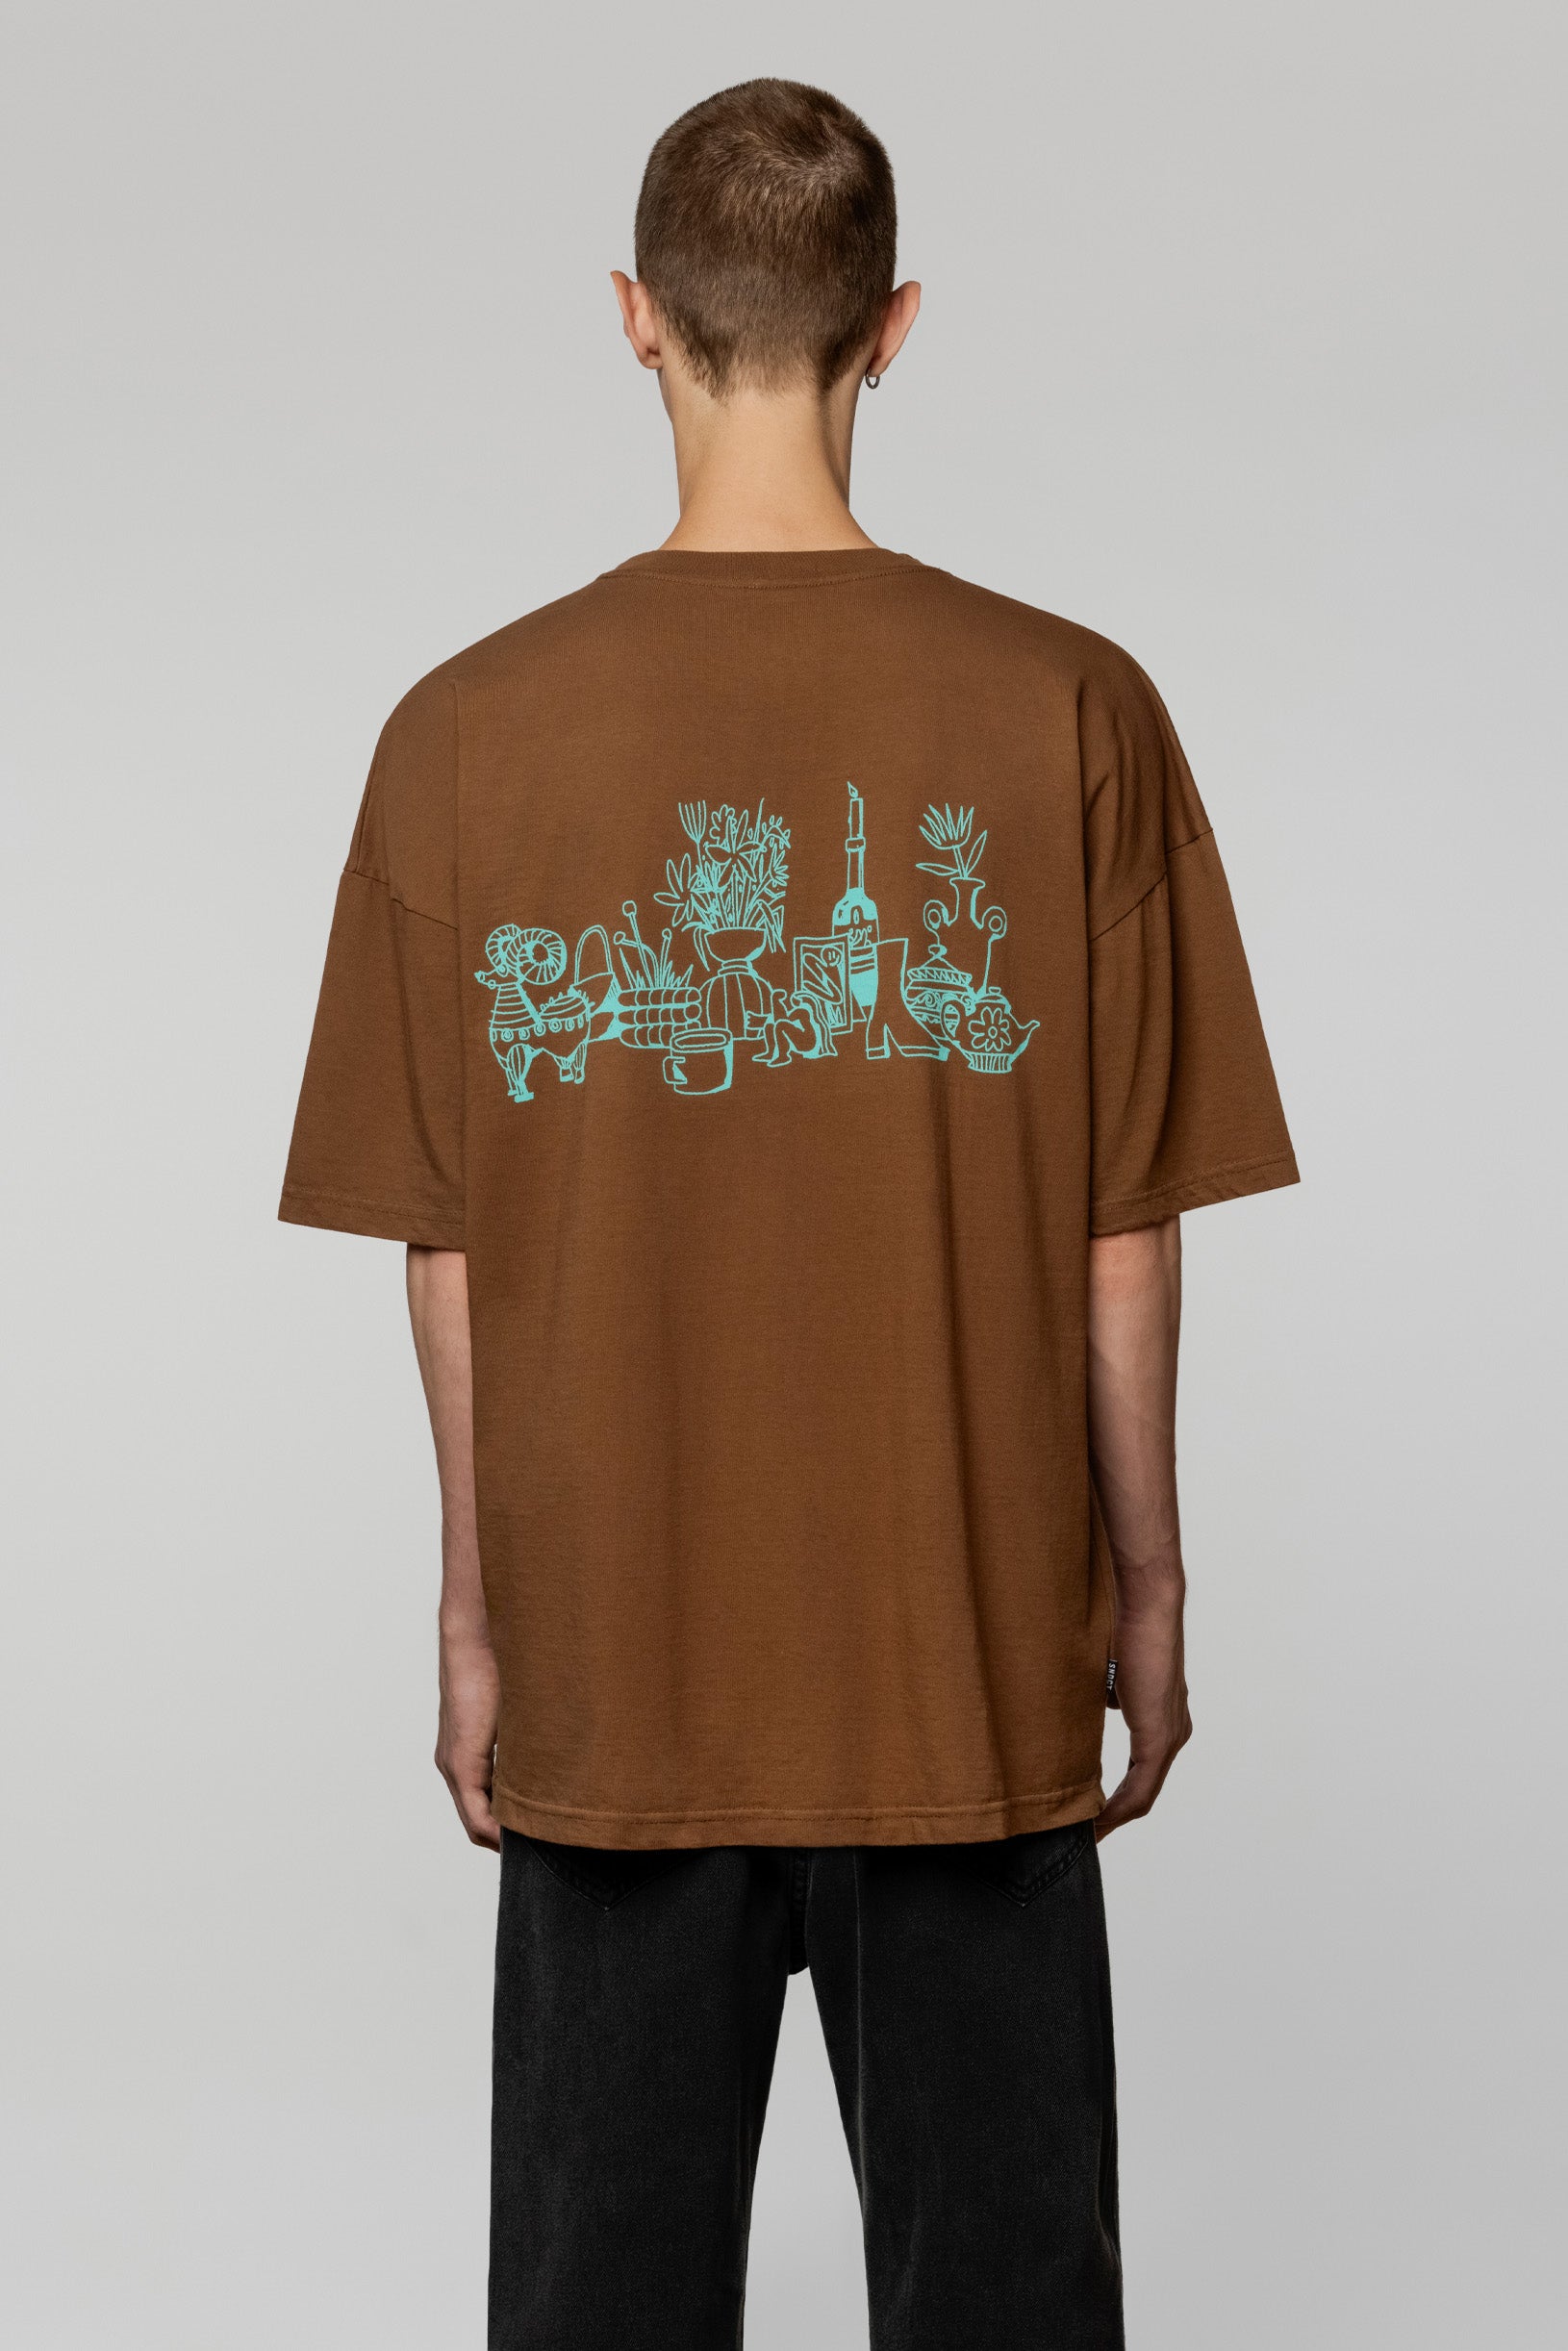 Syndicate x Derega Art Weapon T-shirt Brown